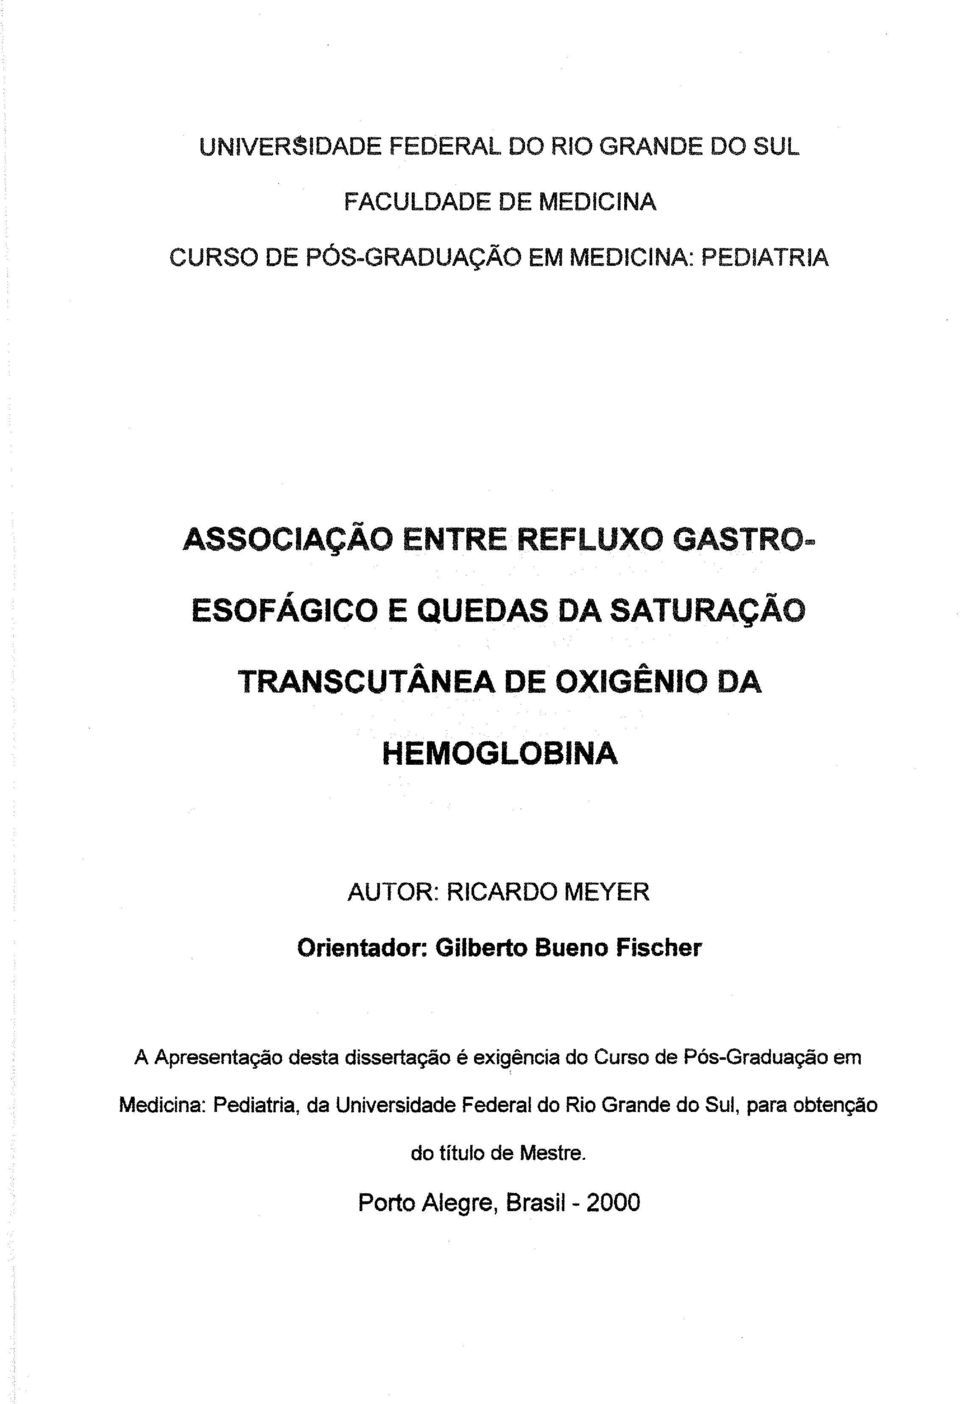 MEYER Orientador: Gilberto Bueno Fischer A Apresentação desta dissertação é exigência do Curso de Pós-Graduação em